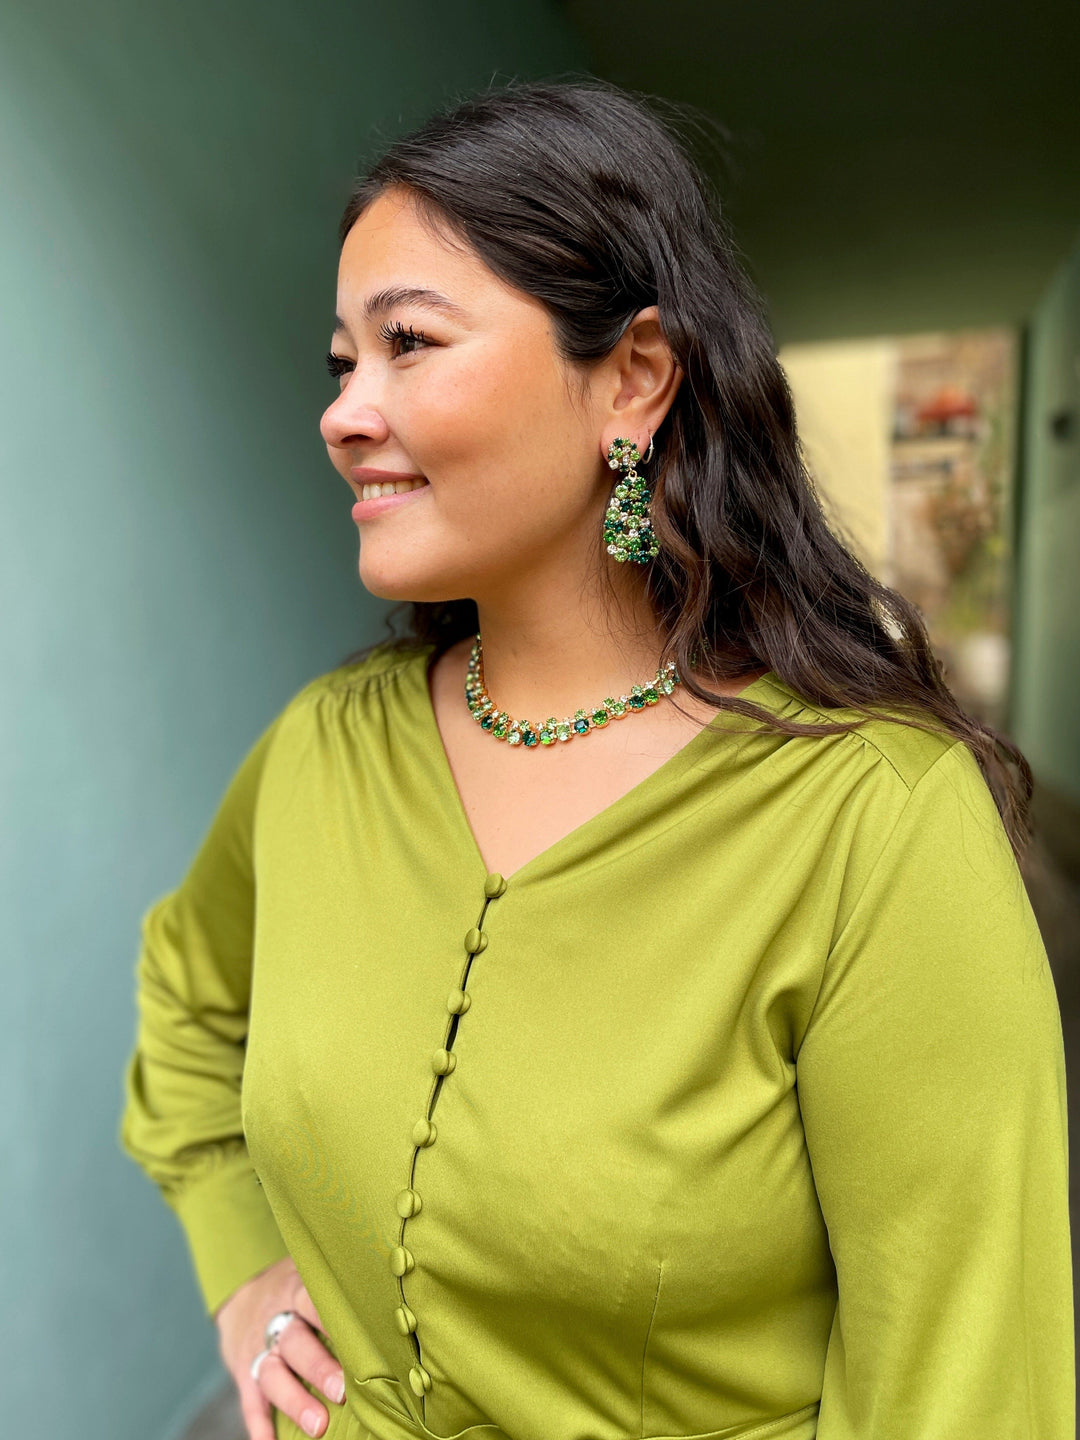 Caroline Svedbom halskjeder Pomona necklace - green combo